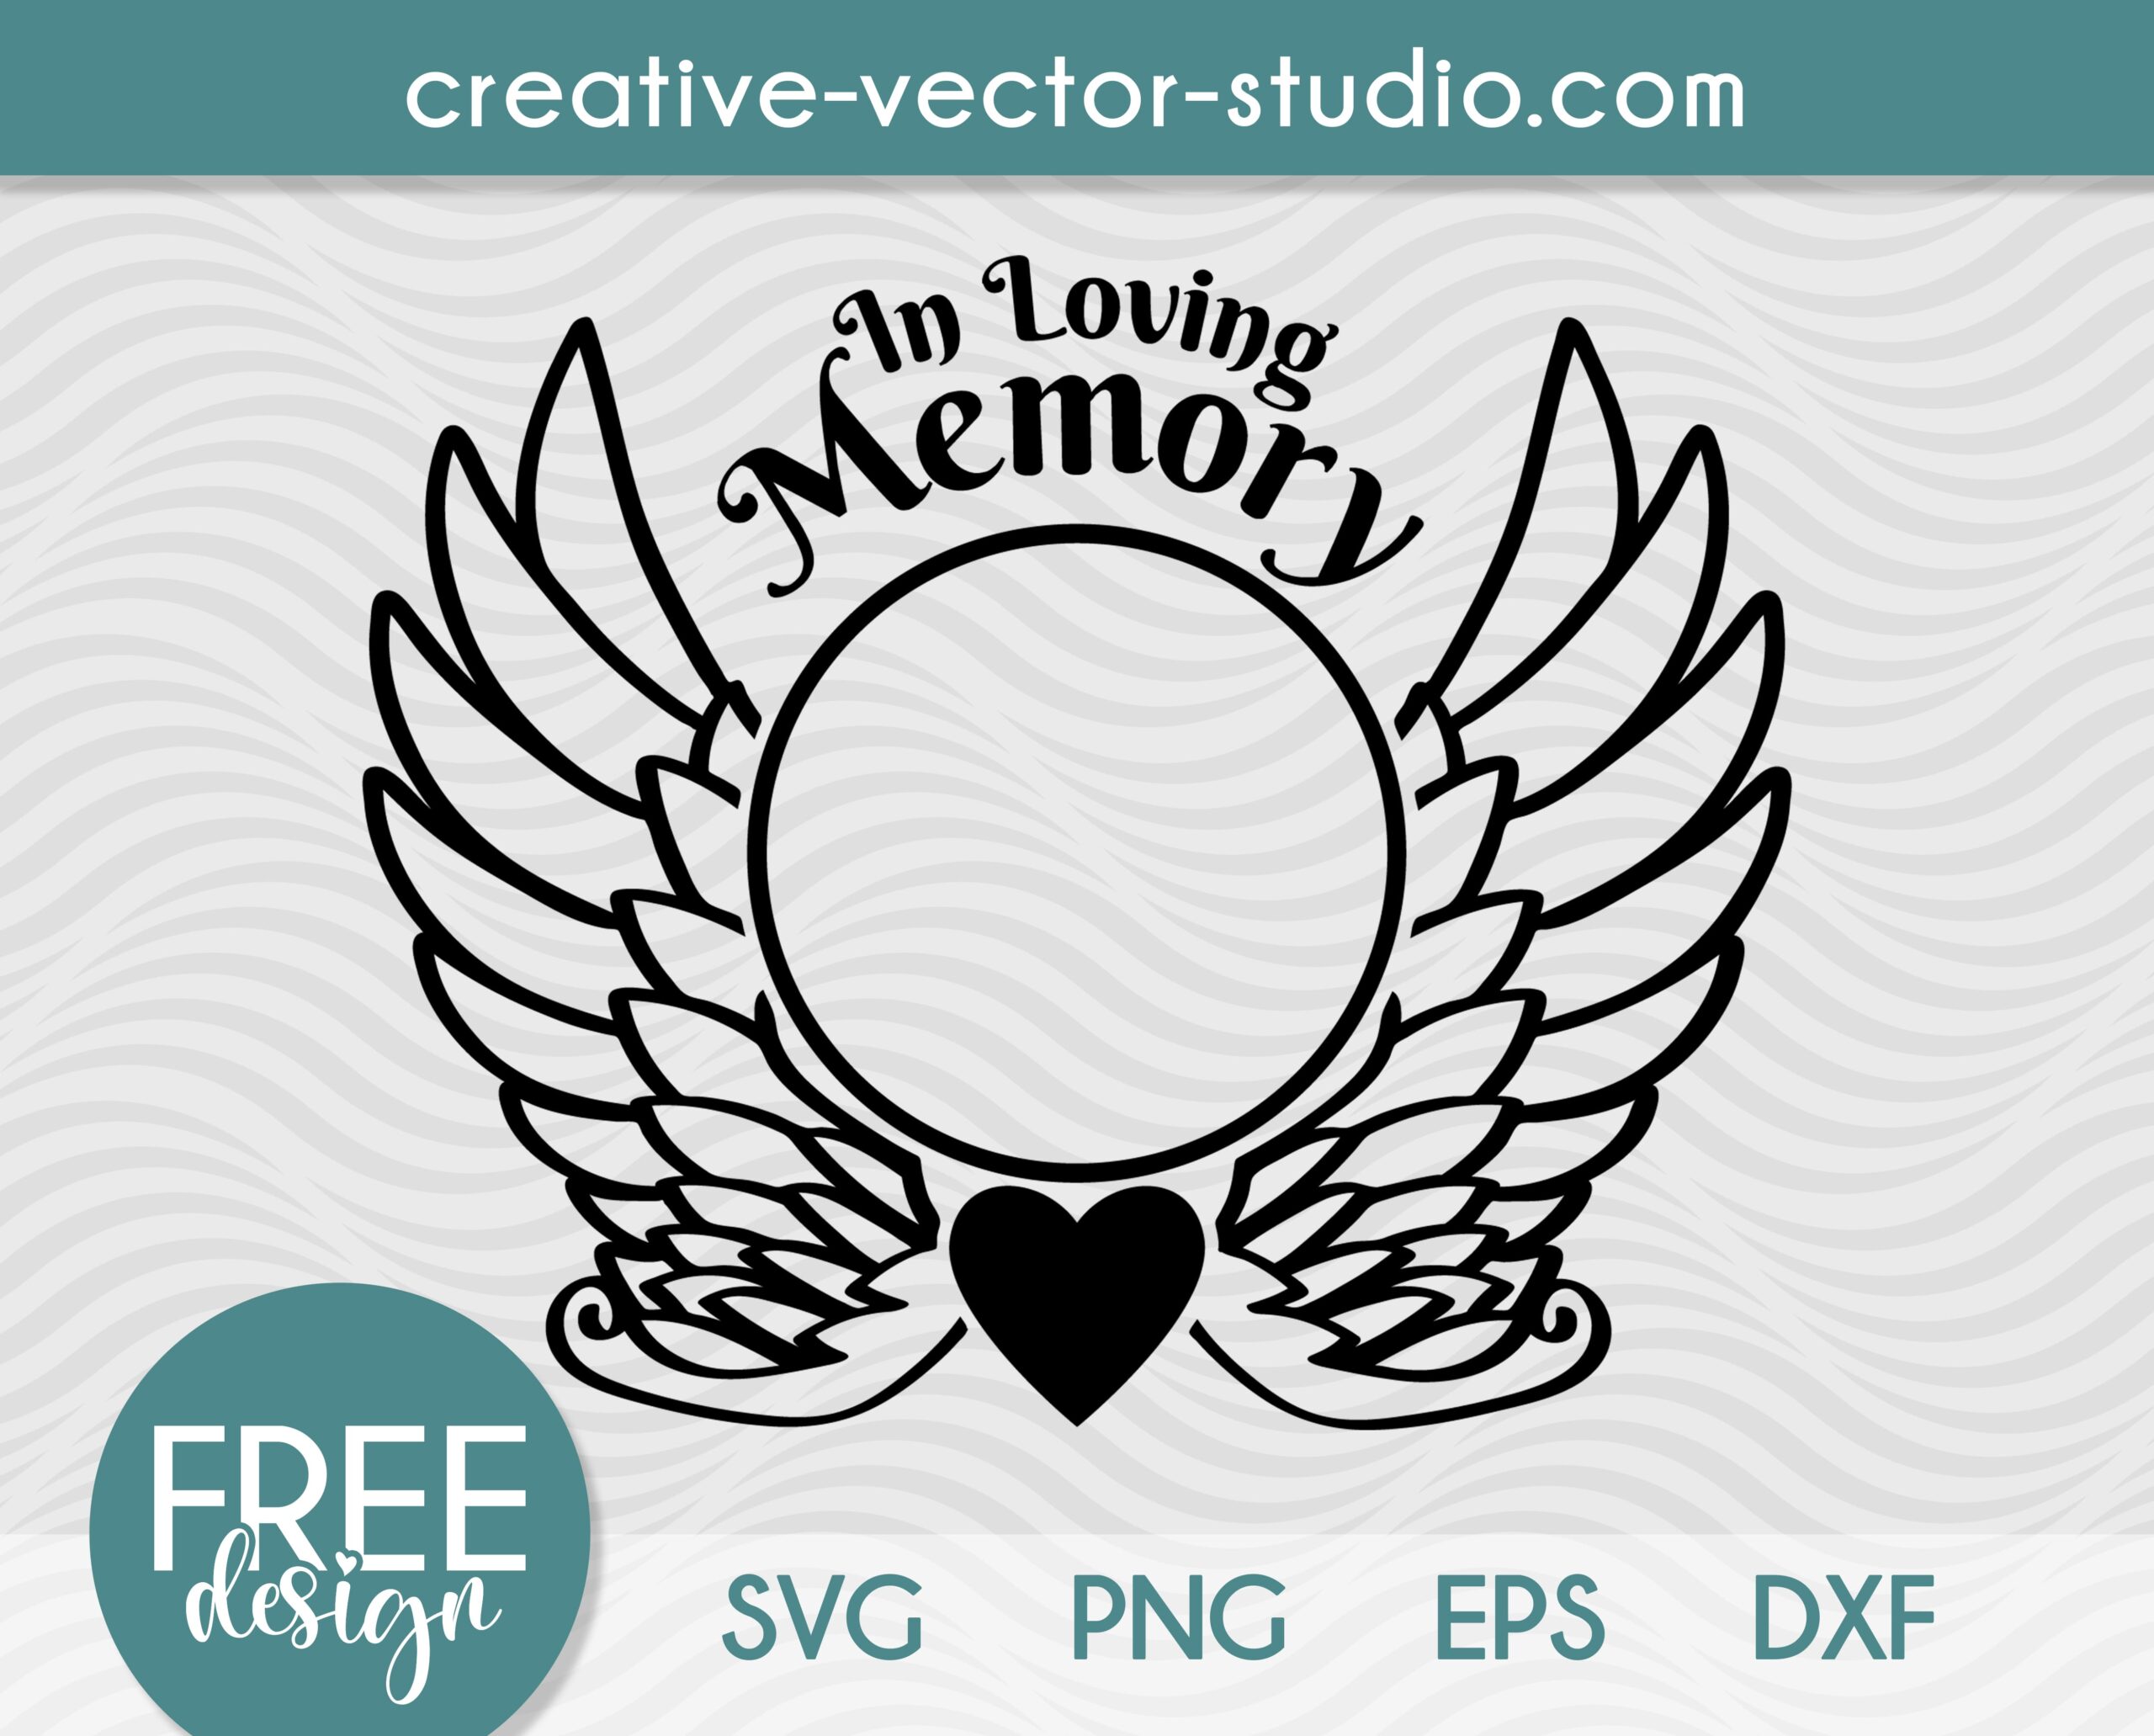 Free In Loving Memory SVG Creative Vector Studio